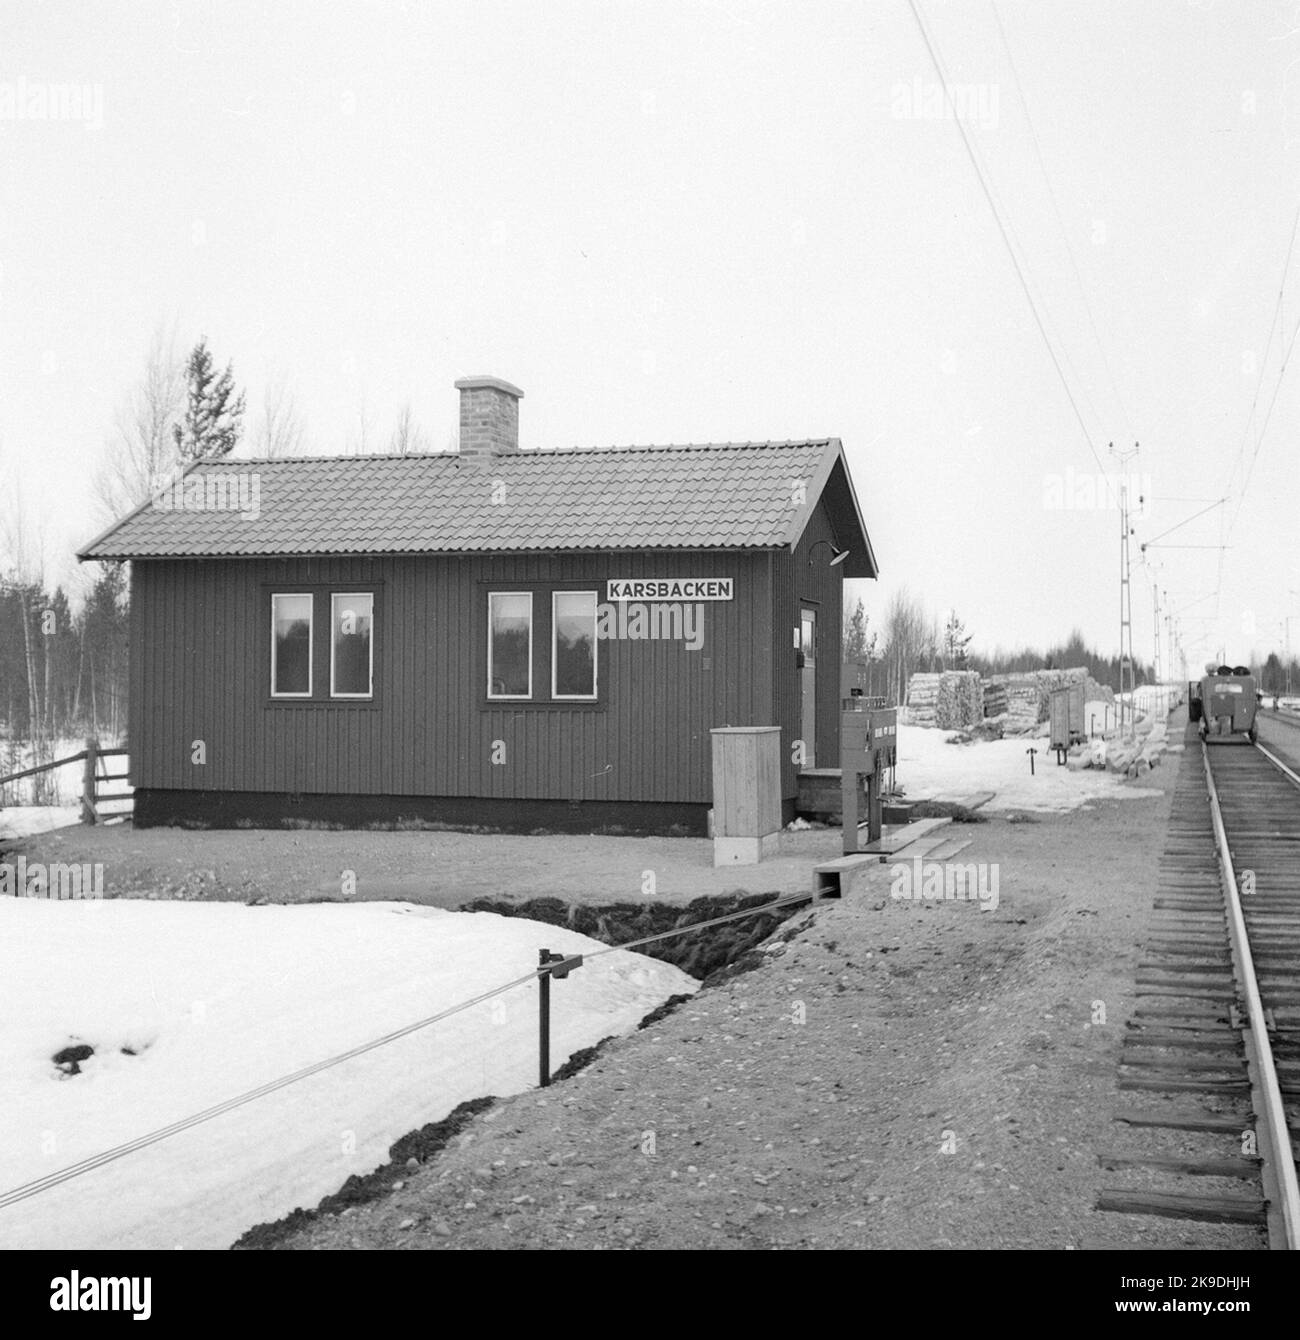 Karsbäcken, luogo di incontro militare tra Kusfors-Bastuträsk. Motordressin sul bordo destro dell'immagine. Foto Stock